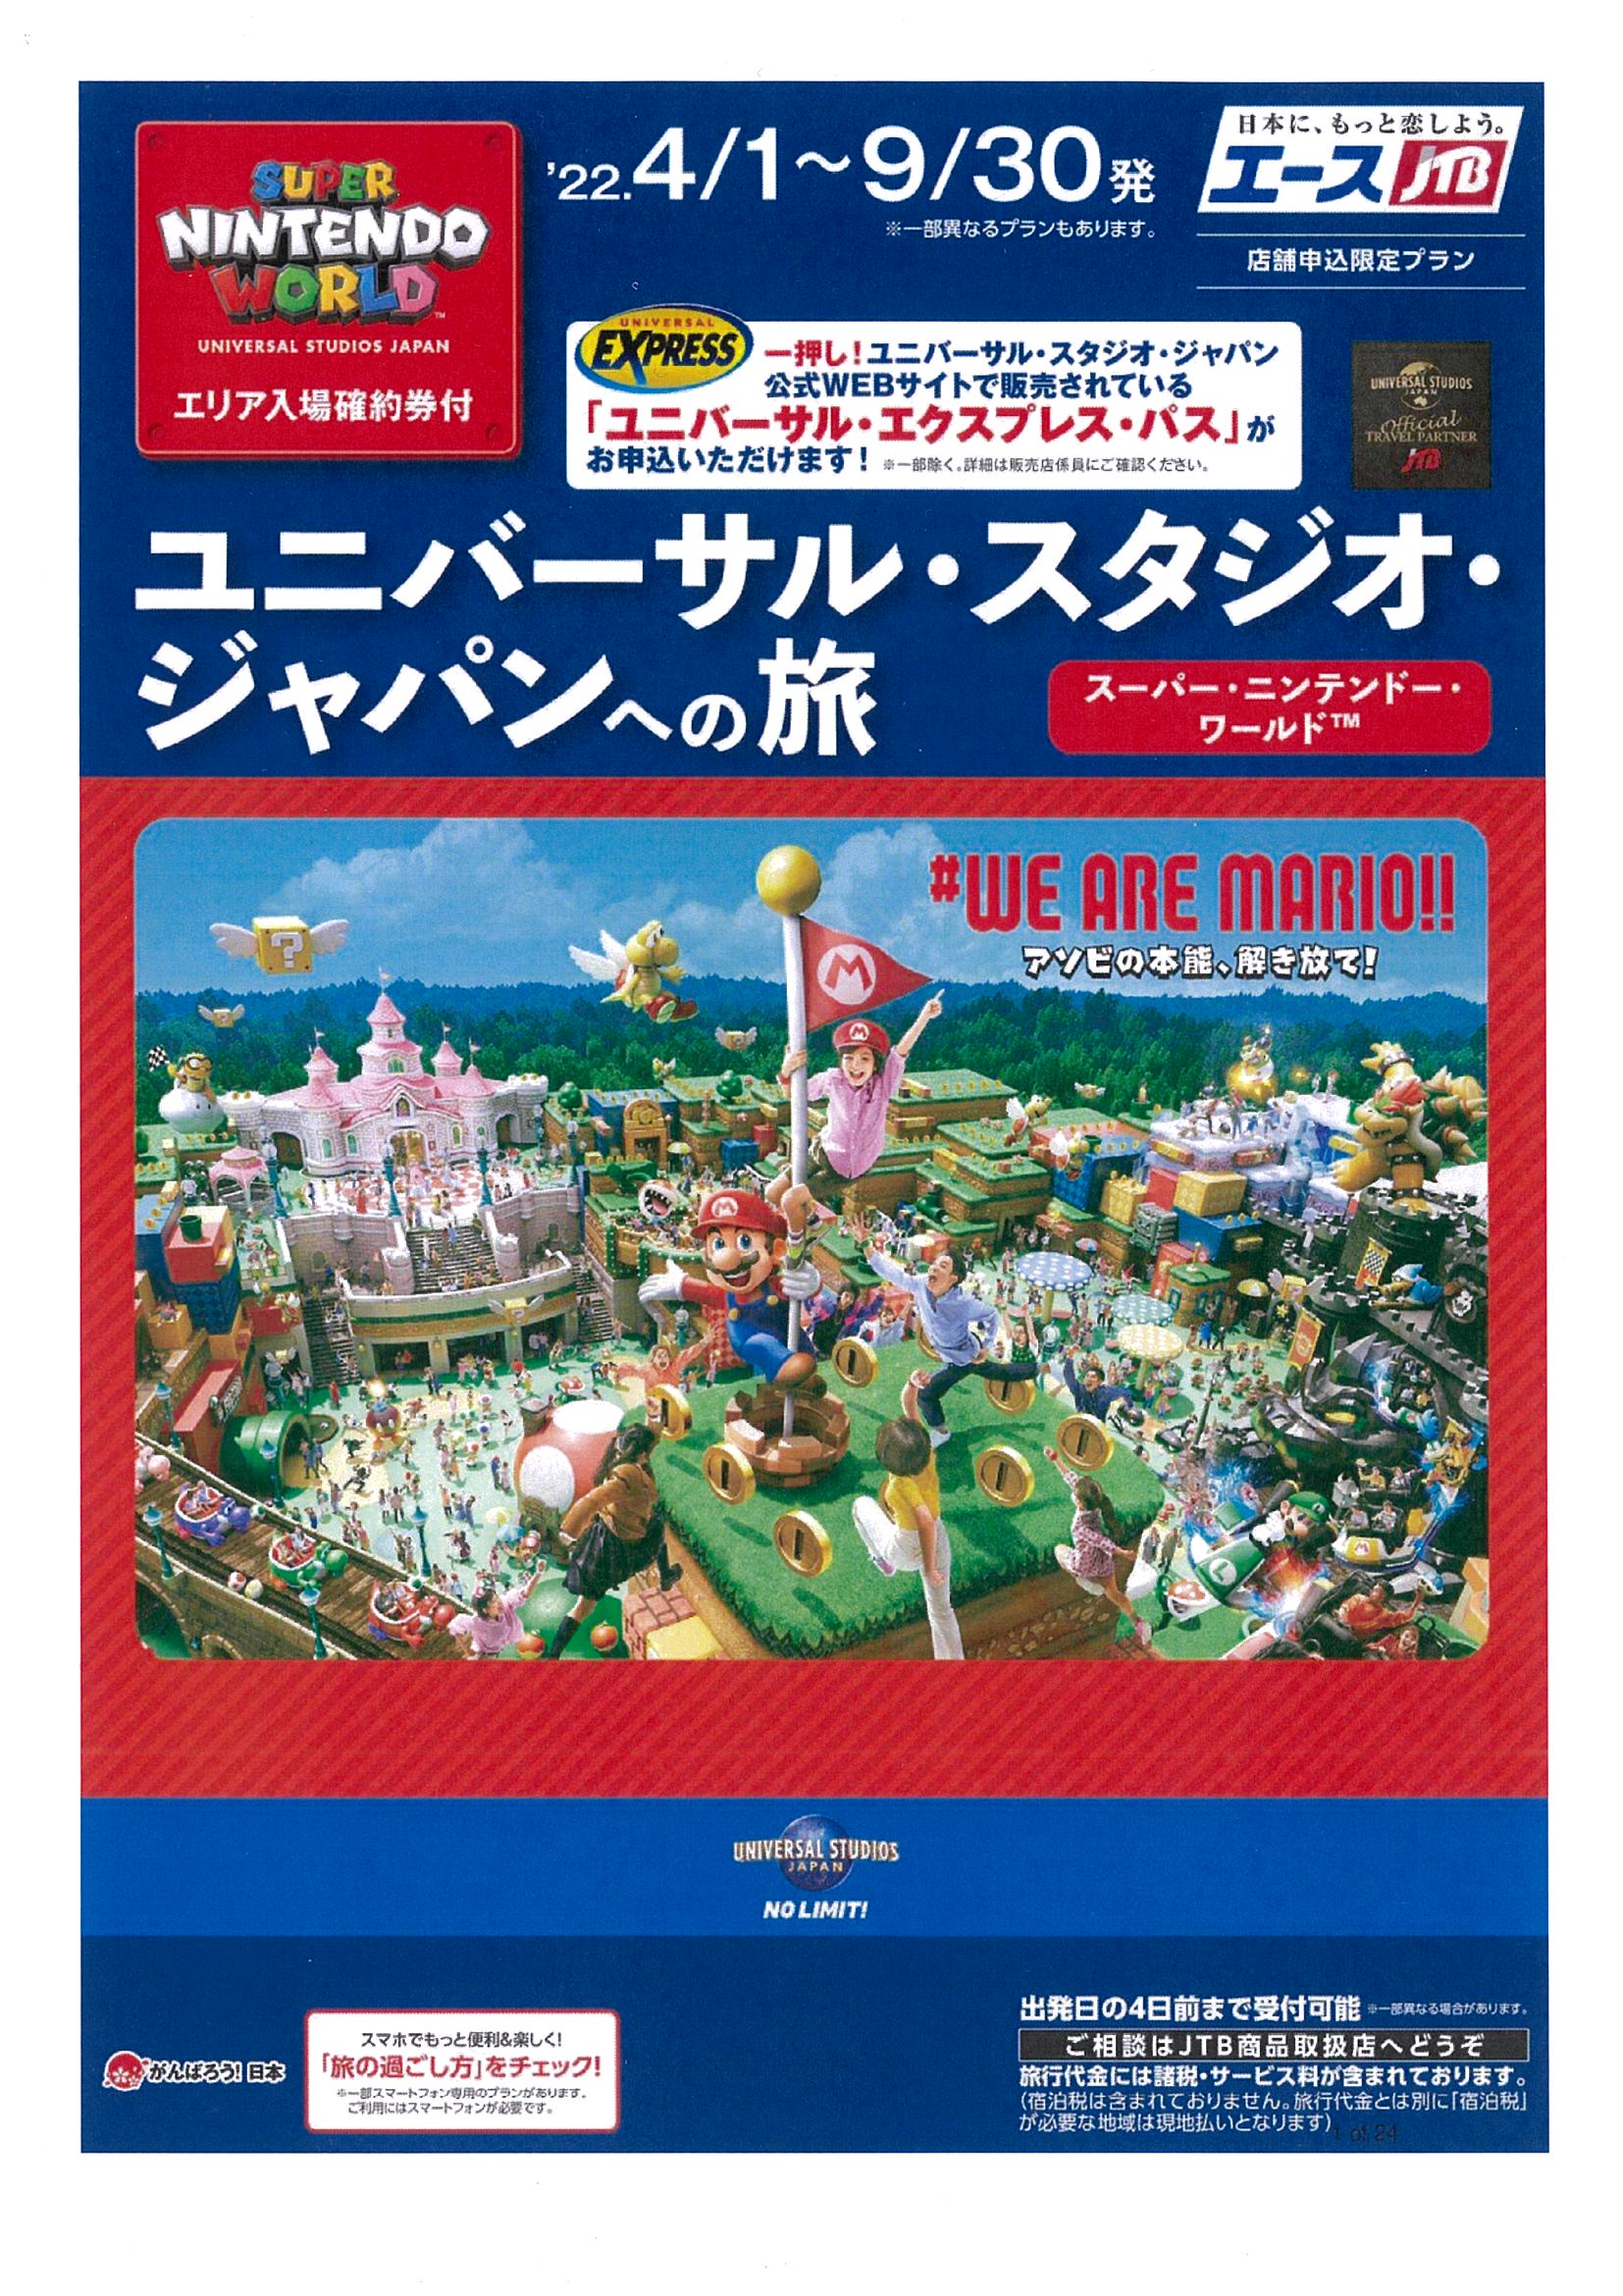 ユニバーサル・スタジオ・ジャパンへの旅　スーパーニンテンドーワールド™